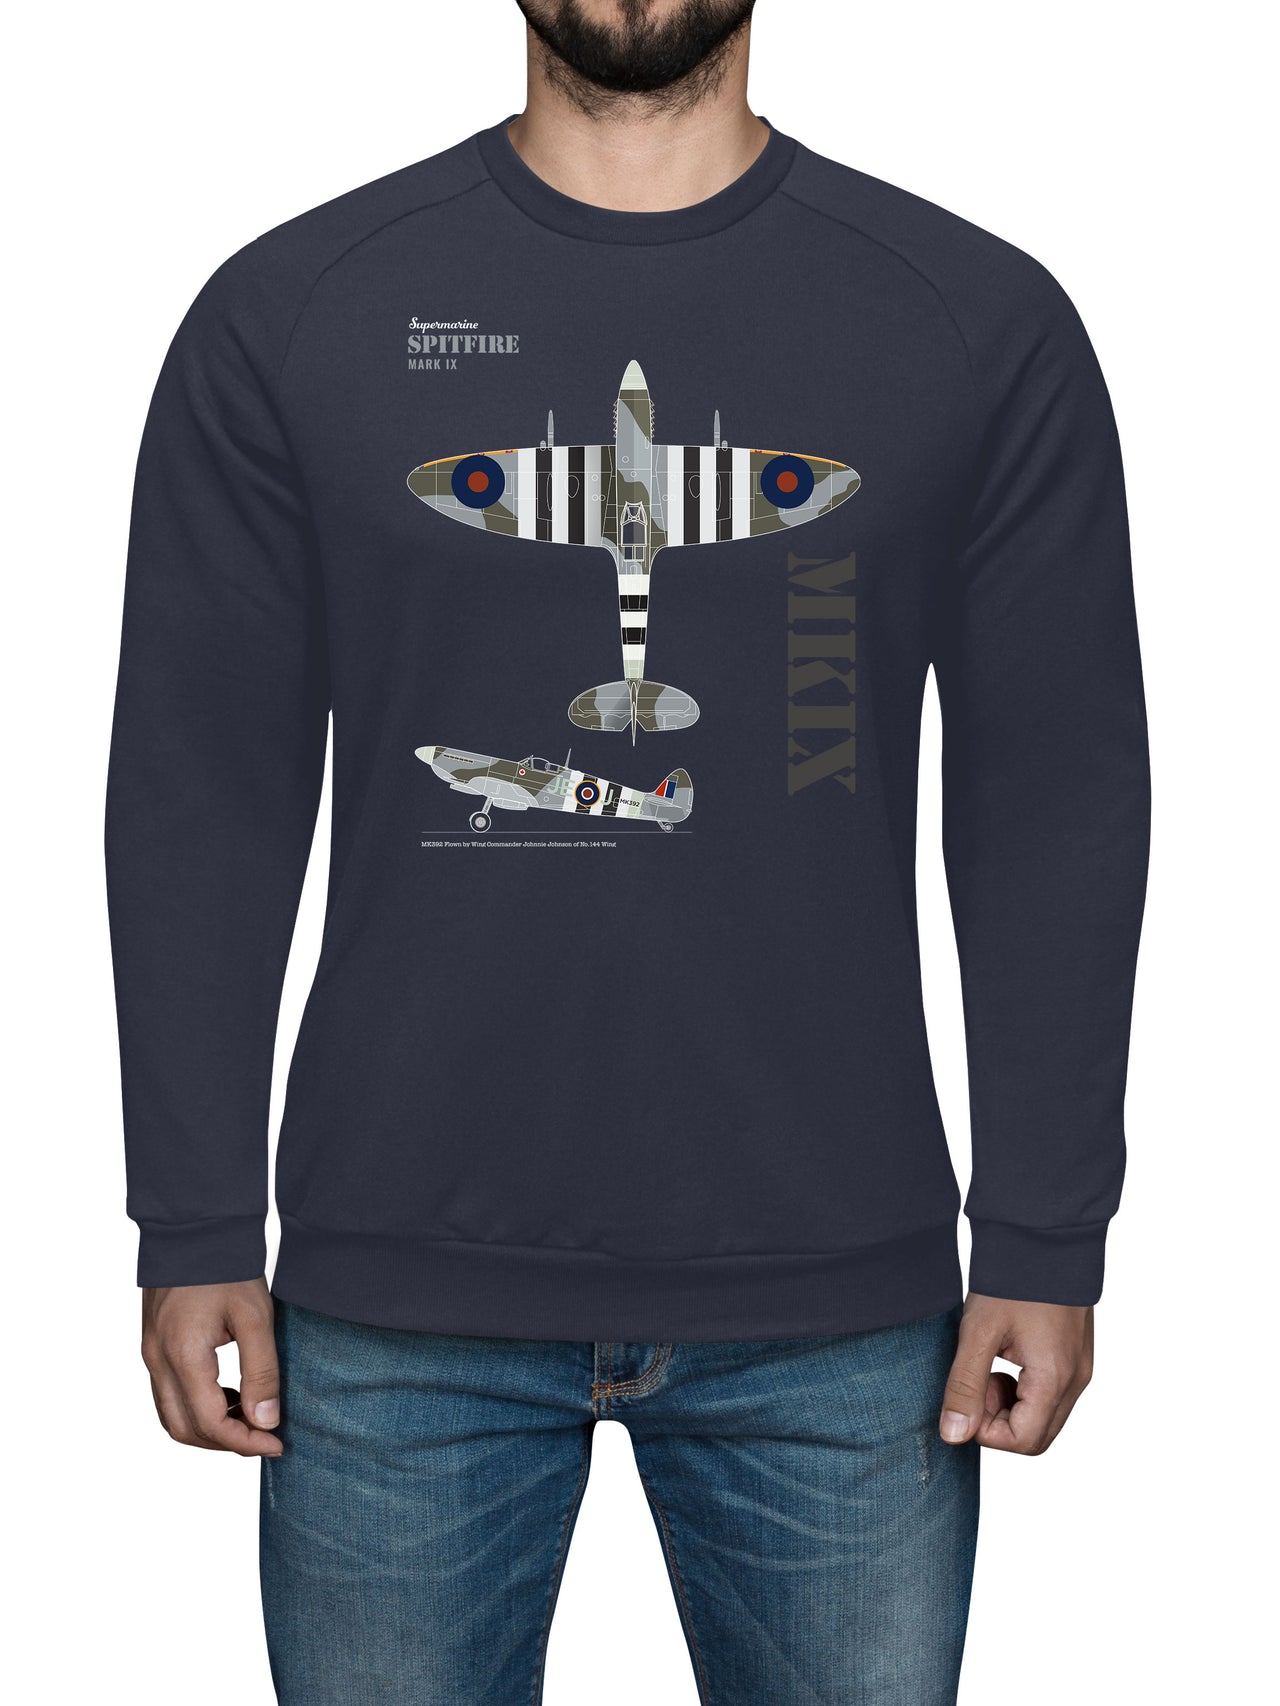 Spitfire MK IX - Sweat Shirt